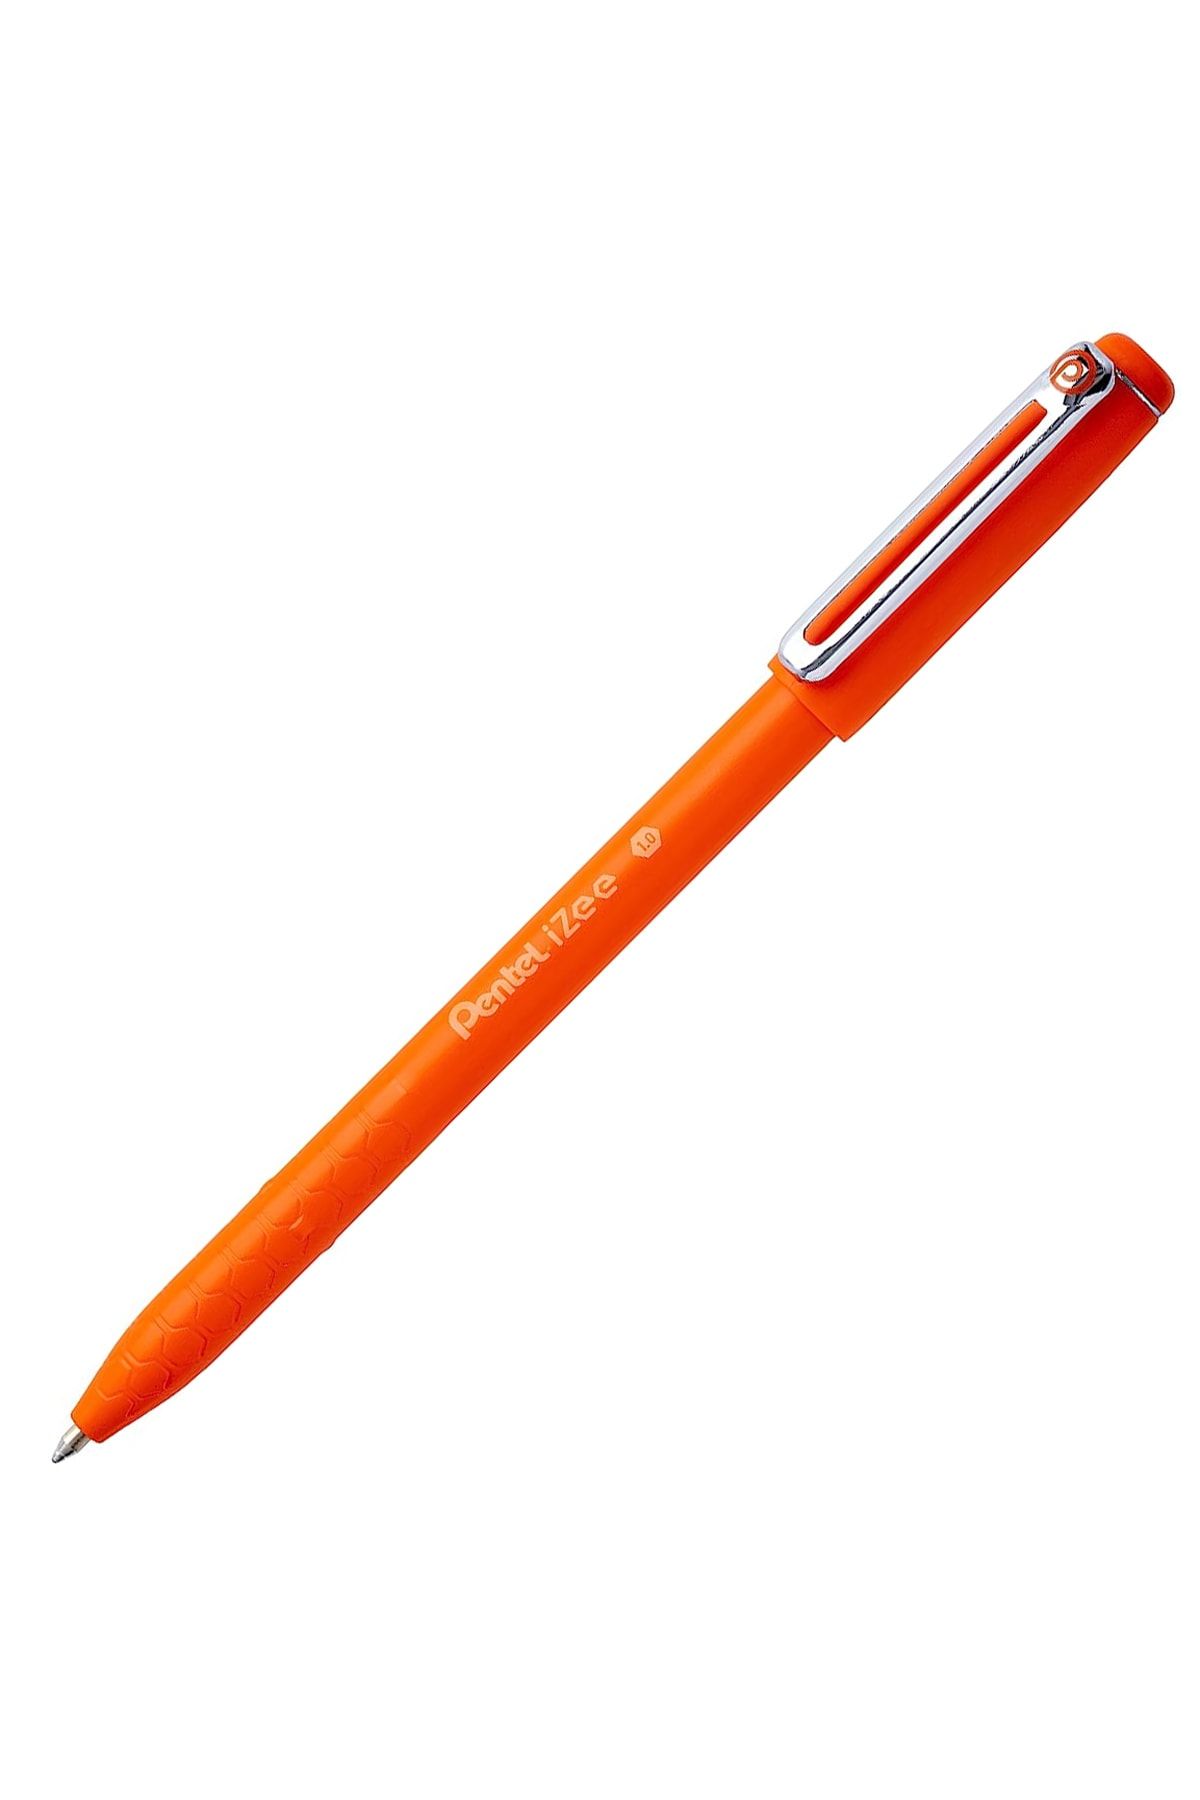 Pentel roller kalem yağ bazlı 1.0mm bx460